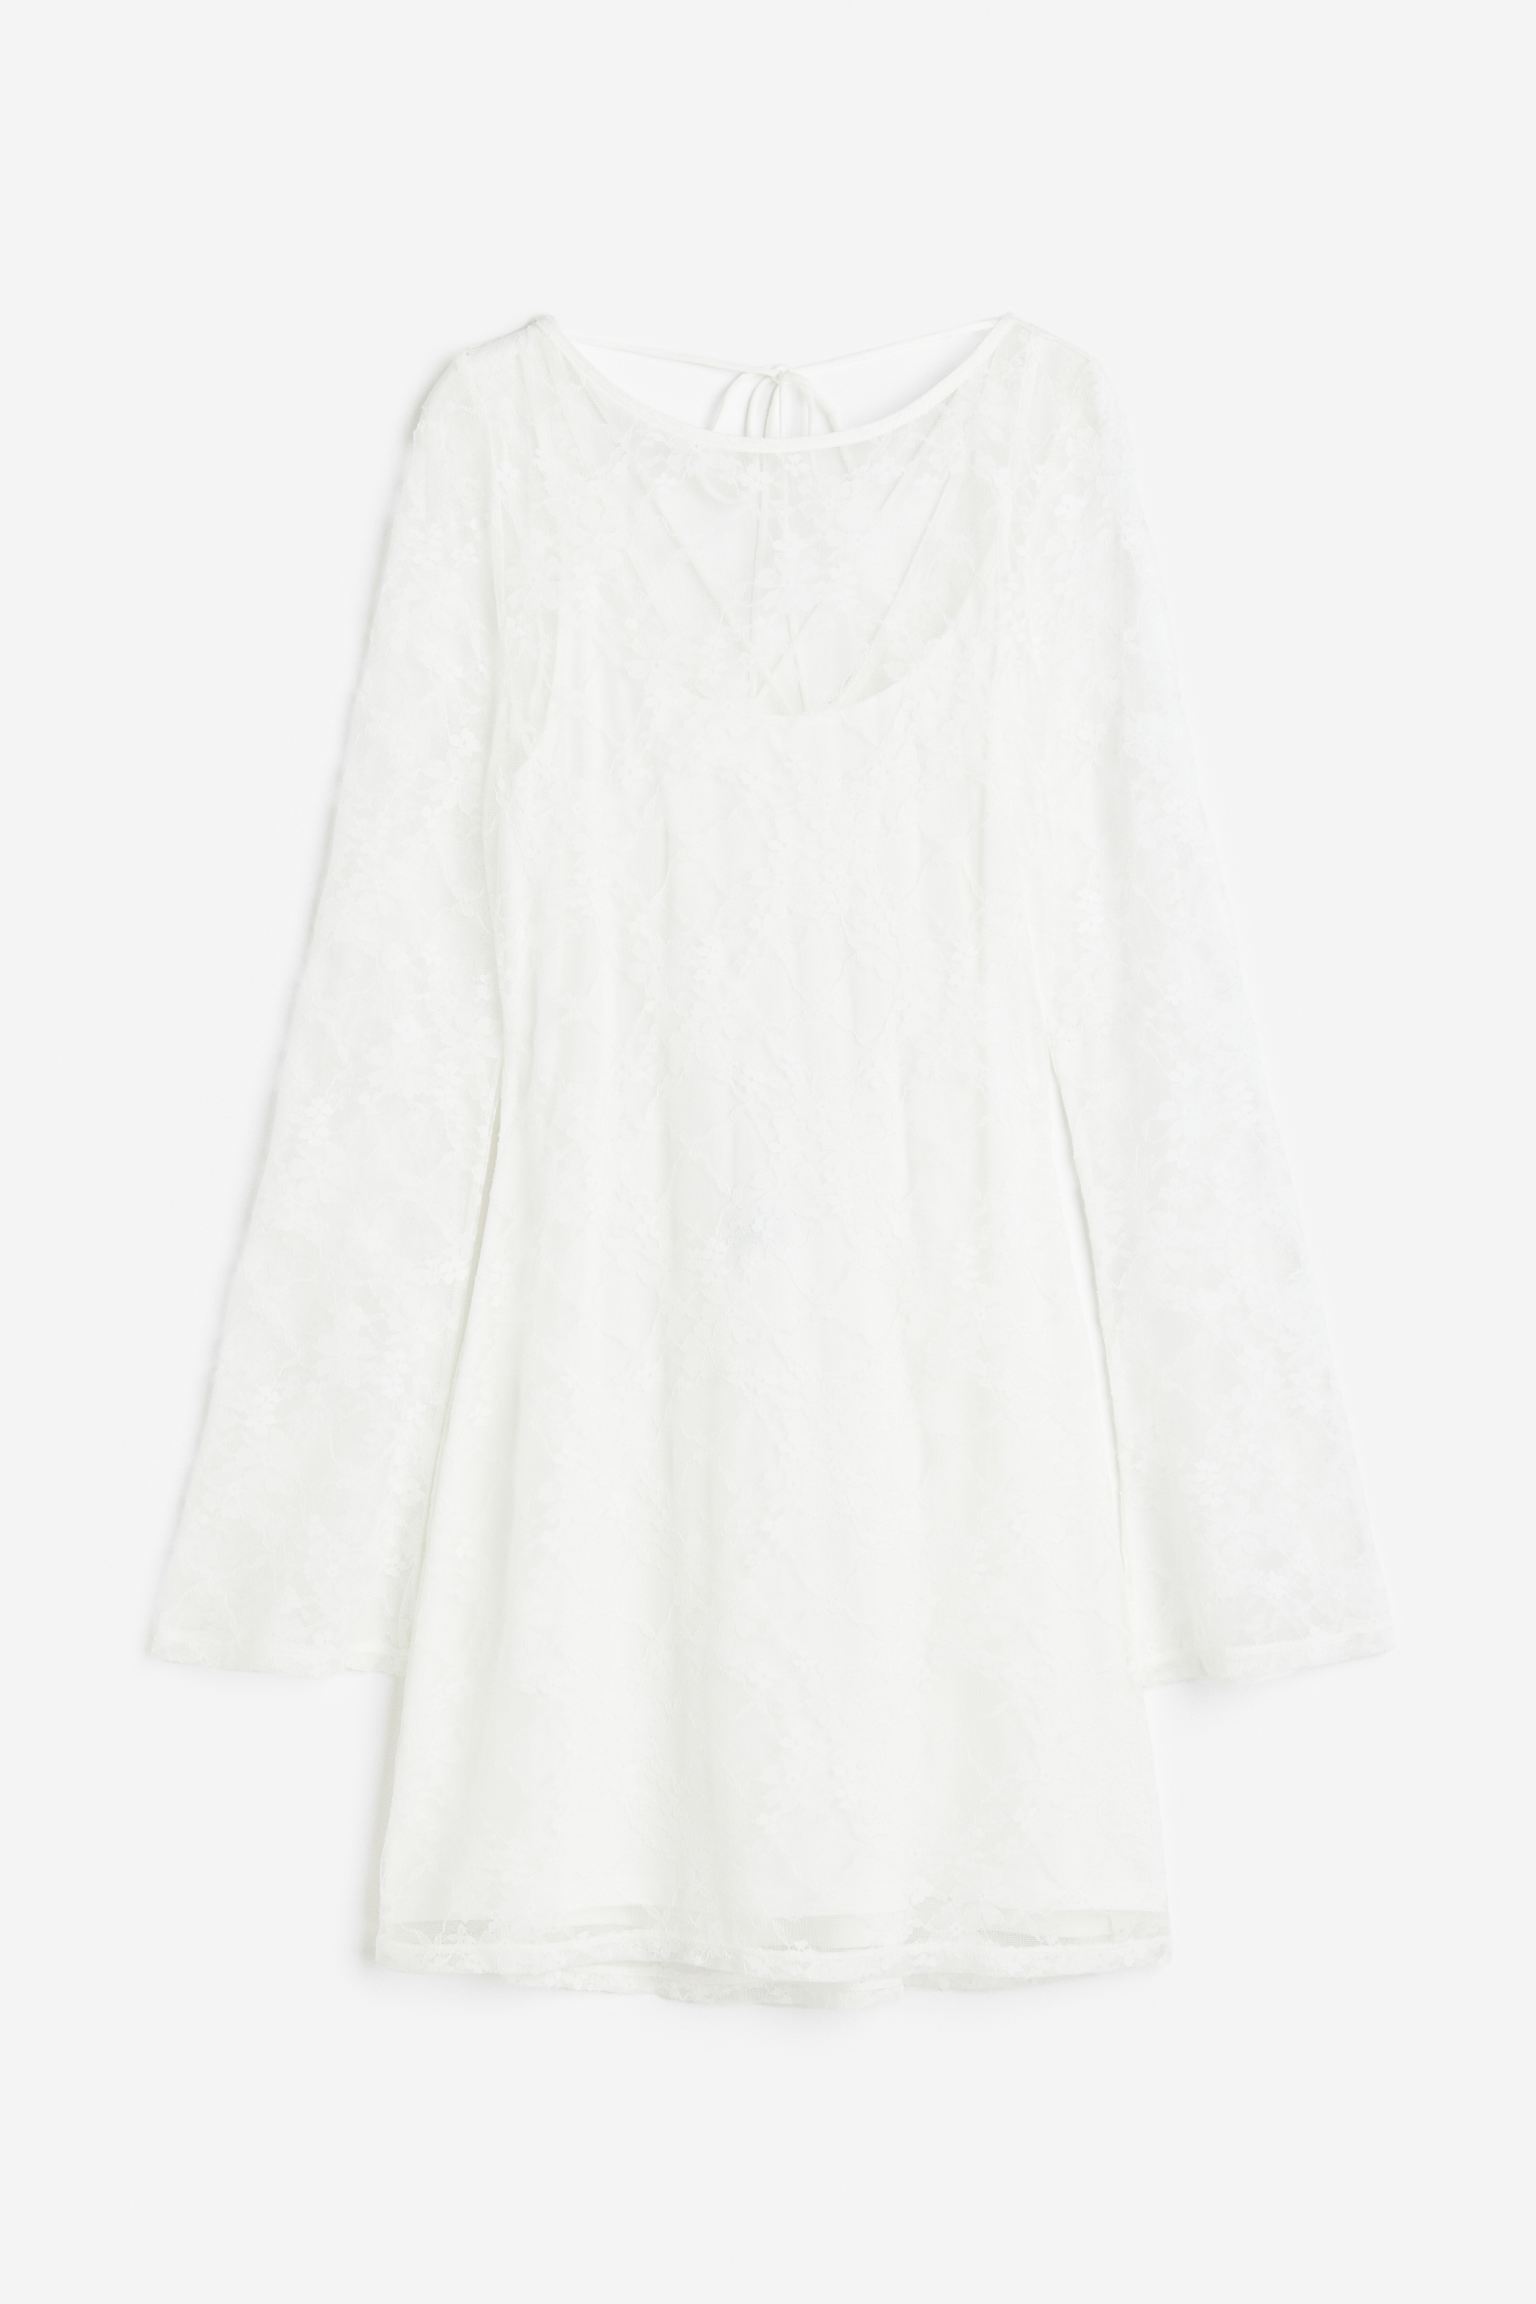 Платье H&M Lacing-detail Open-backed Lace, кремовый летнее короткое свадебное платье с круглым вырезом прозрачное короткое кружевное платье с длинным рукавом и фатином модель 2021 года